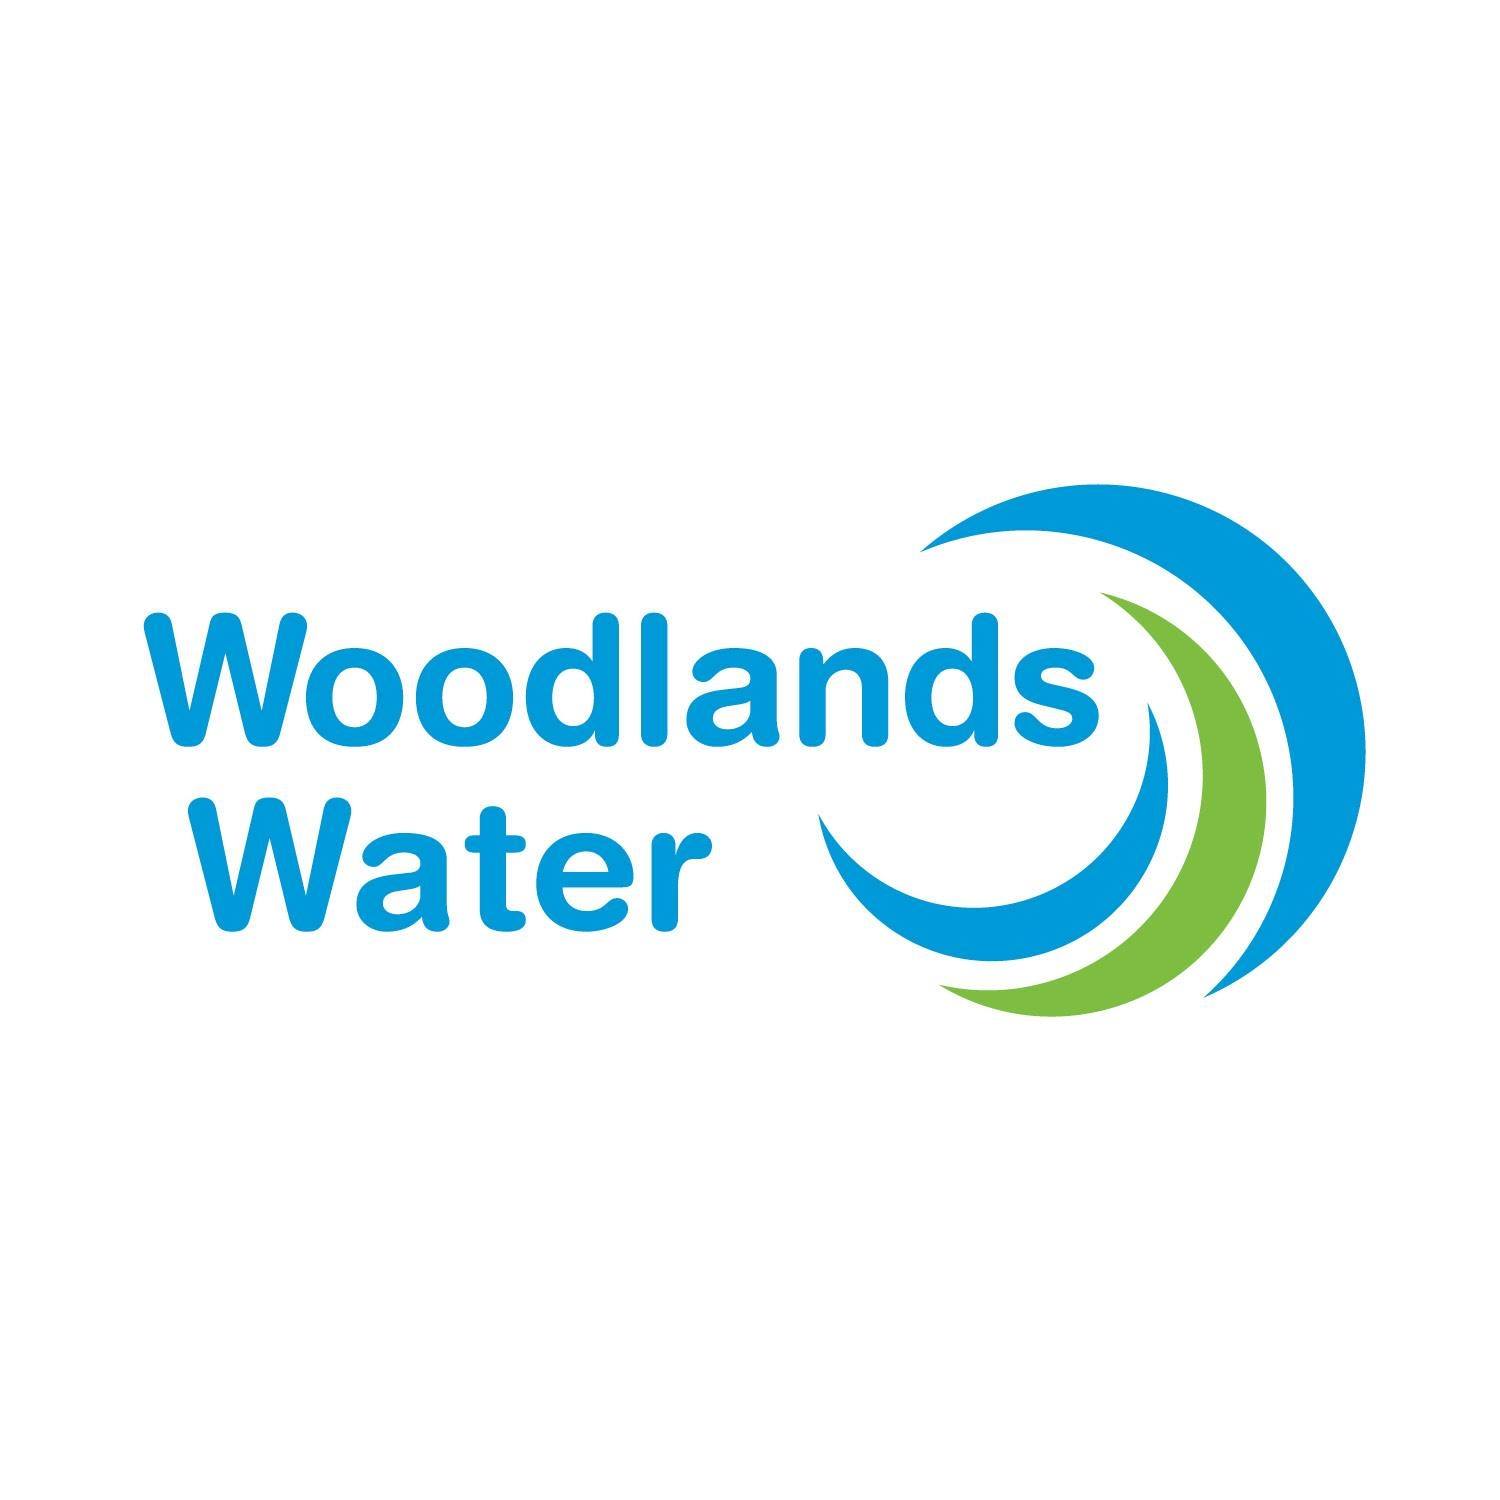 Woodlands Water